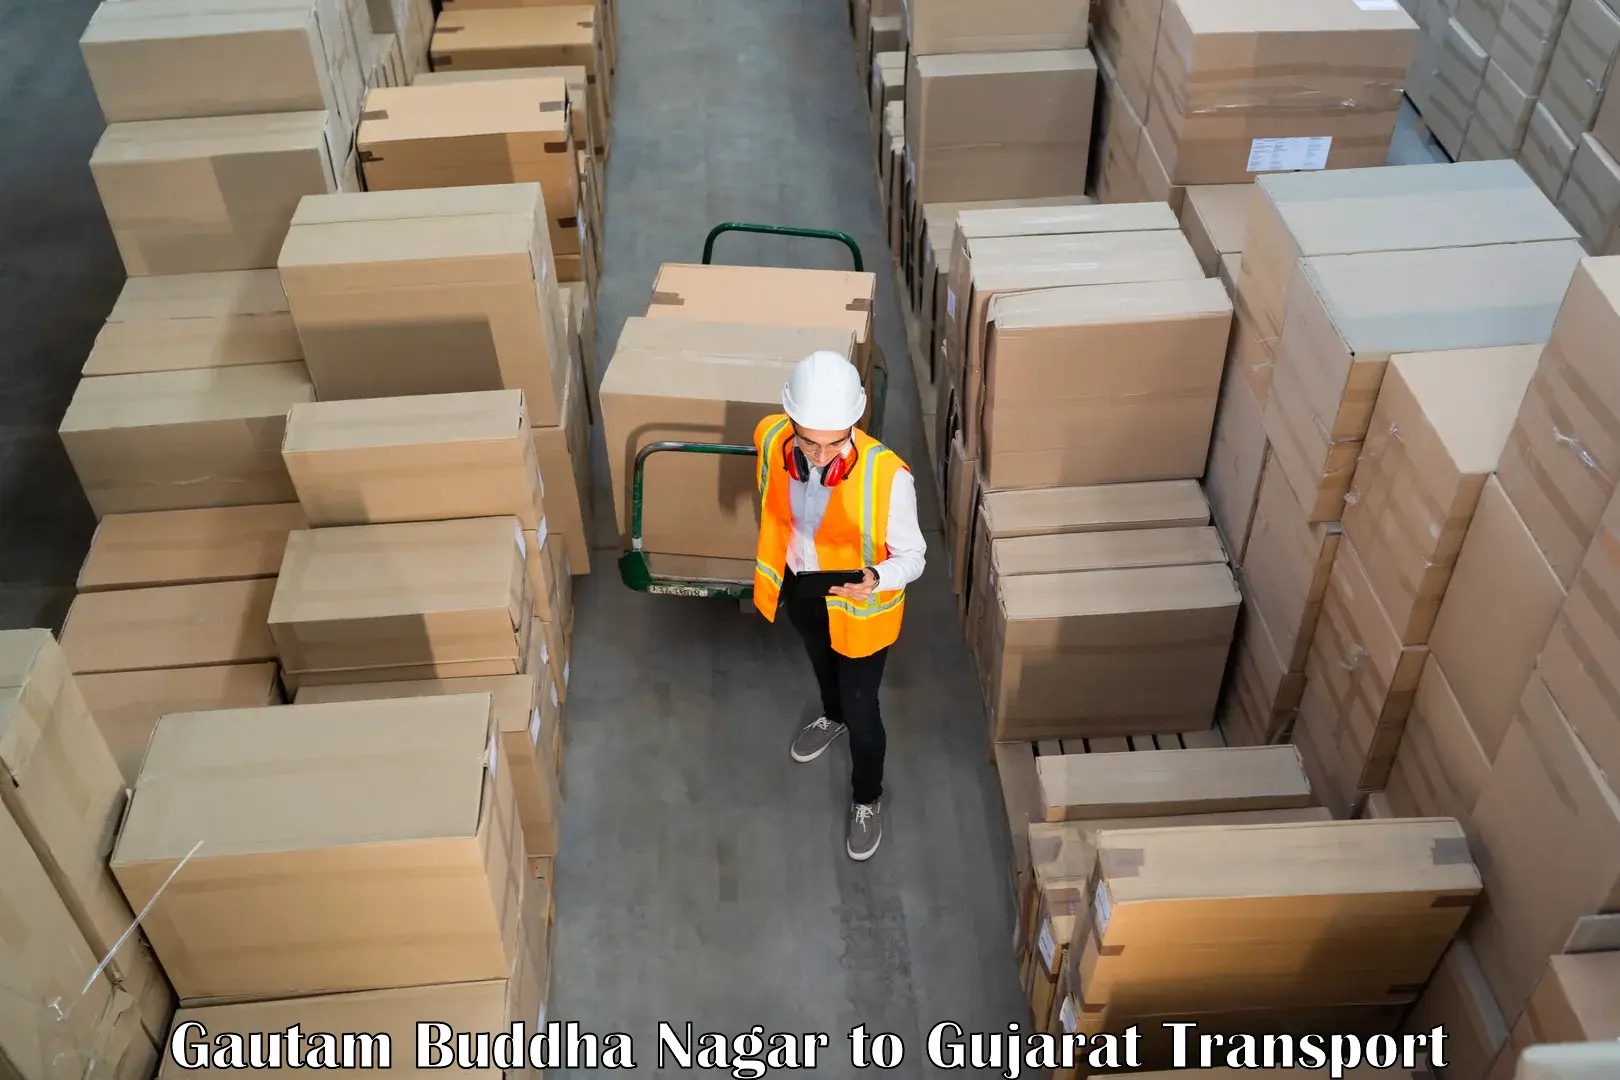 Shipping partner Gautam Buddha Nagar to Kalol